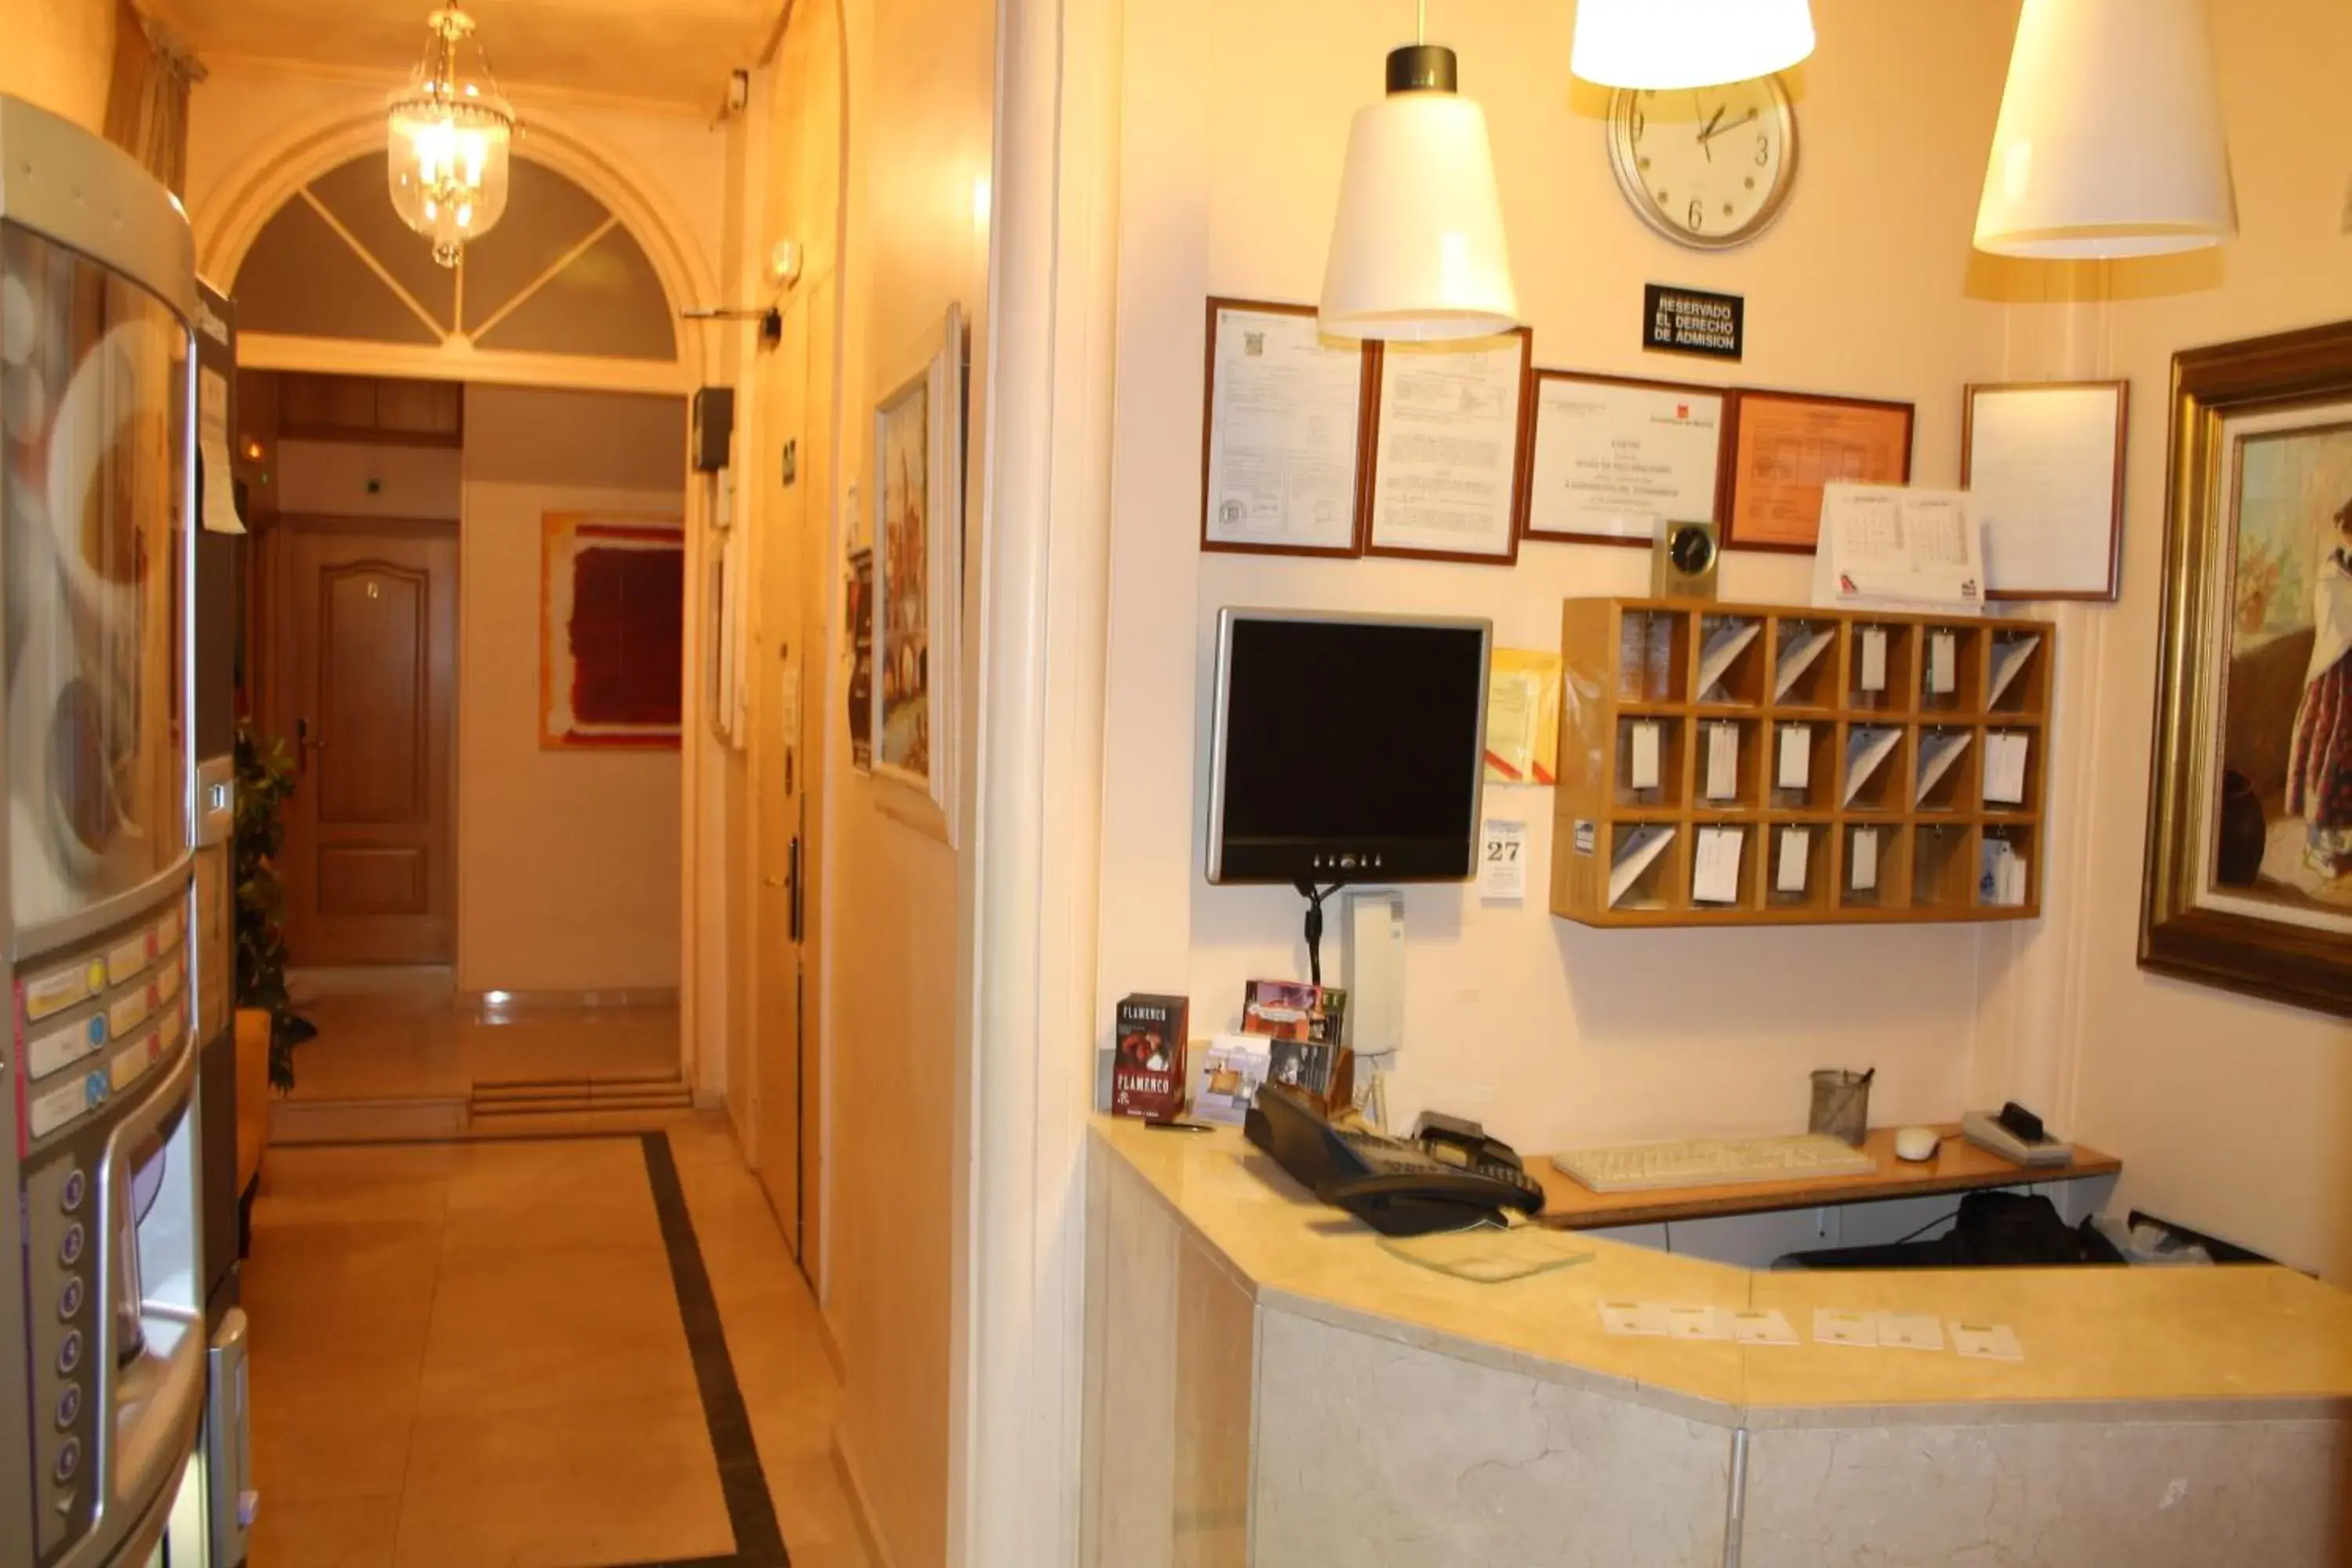 Lobby or reception in Hostal Santa Cruz